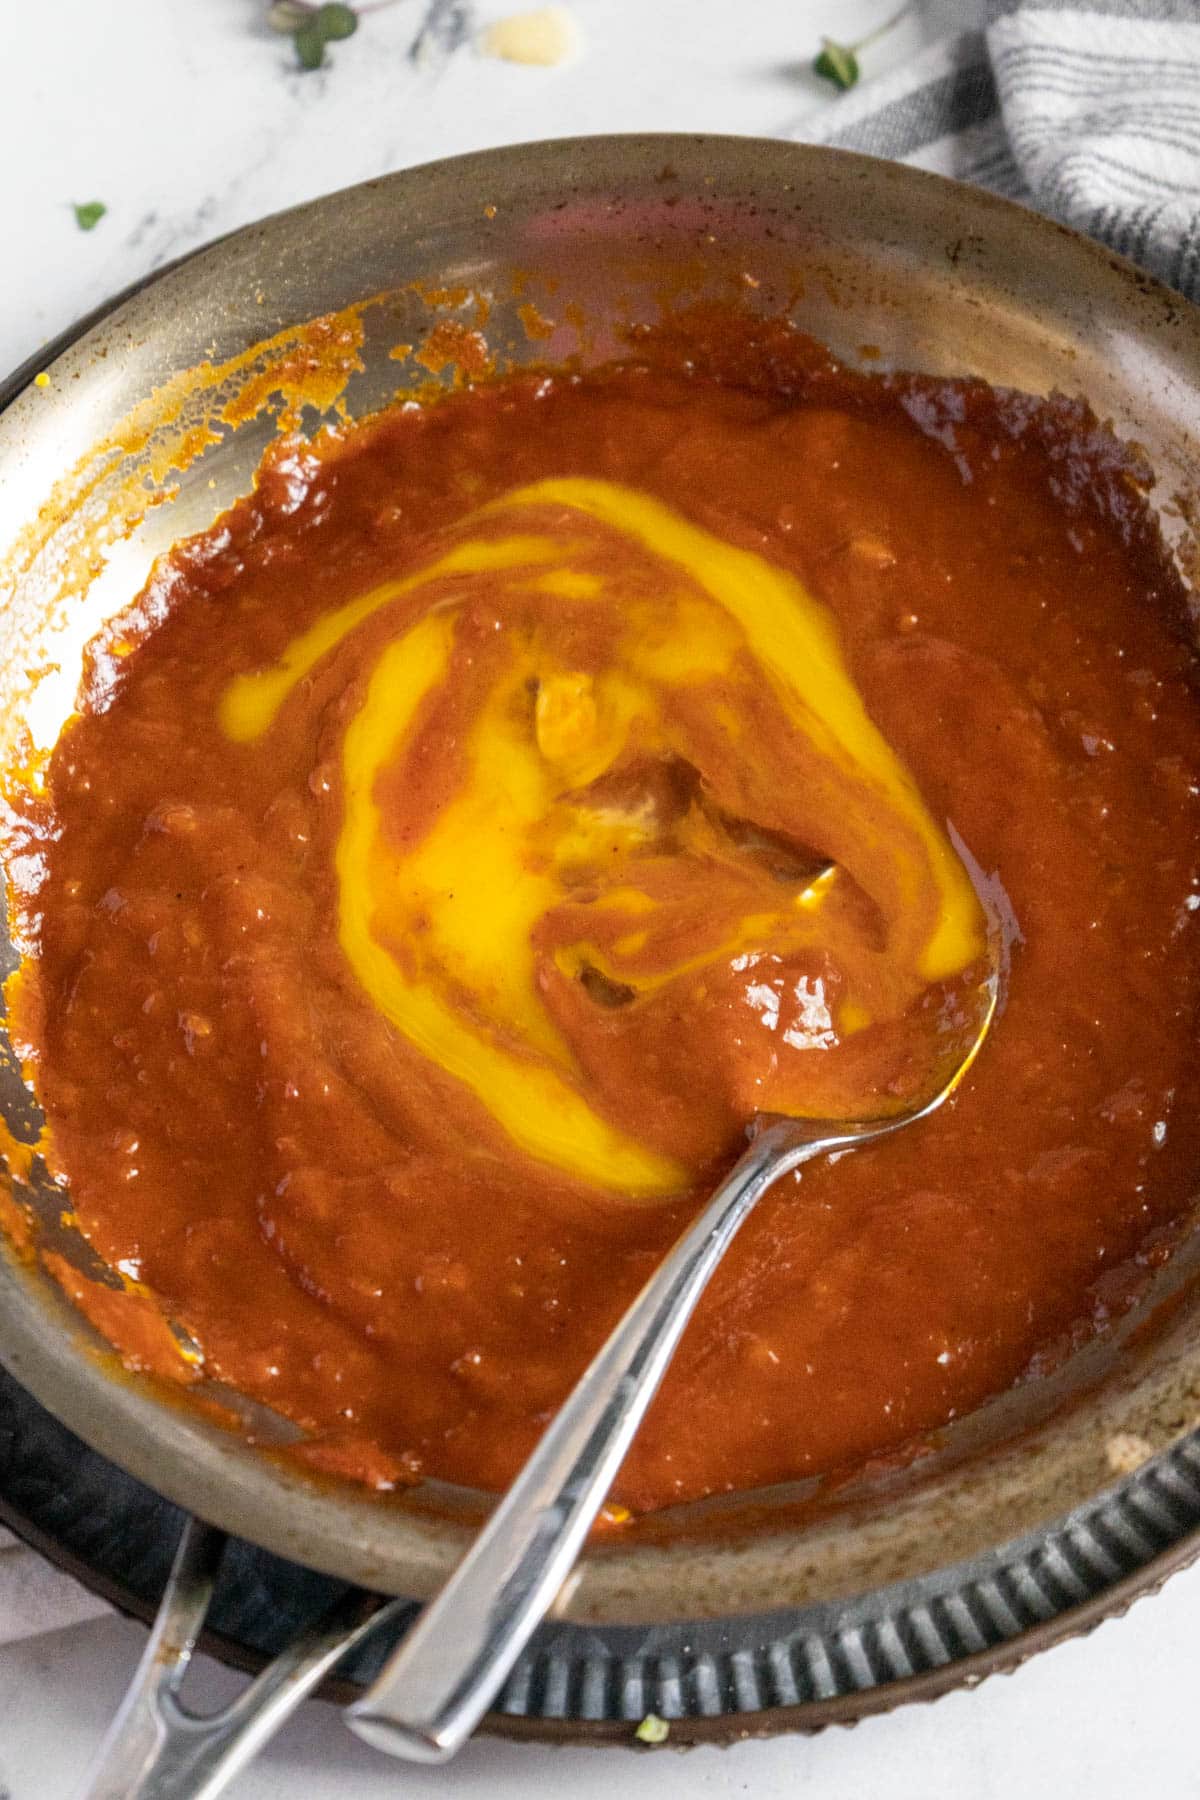 Adding egg yolks to BBQ sauce.